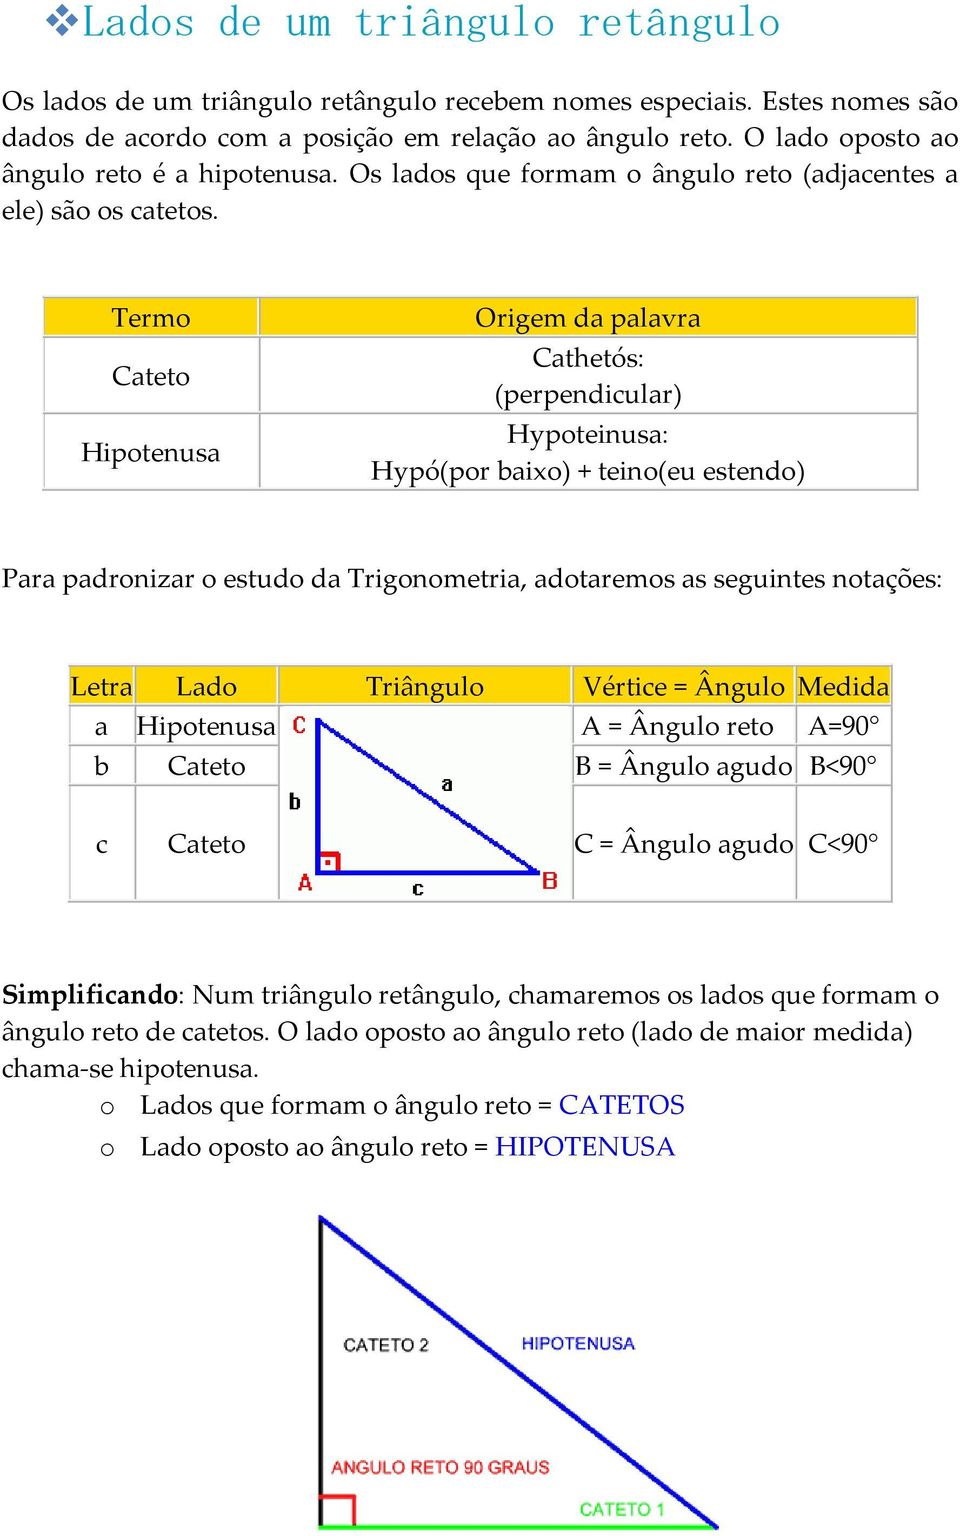 Termo Cateto Hipotenusa Origem da palavra Cathetós: (perpendicular) Hypoteinusa: Hypó(por baixo) + teino(eu estendo) Para padronizar o estudo da Trigonometria, adotaremos as seguintes notações: Letra